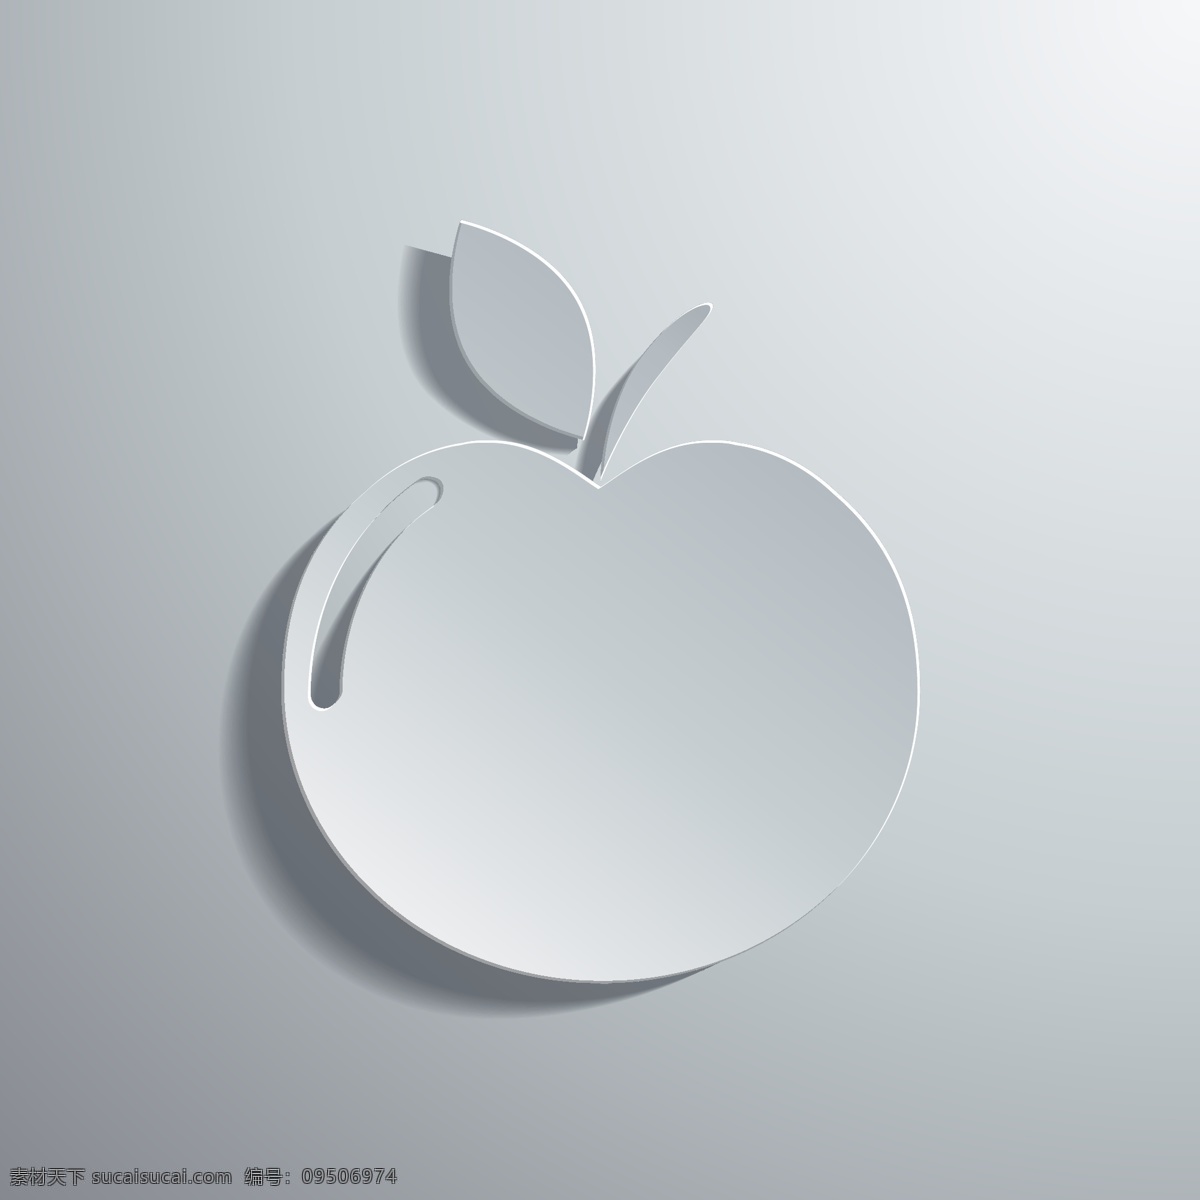 立体苹果背景 立体苹果 白色苹果 立体背景 背景图案 背景素材 纸张设计 生活百科 矢量素材 灰色